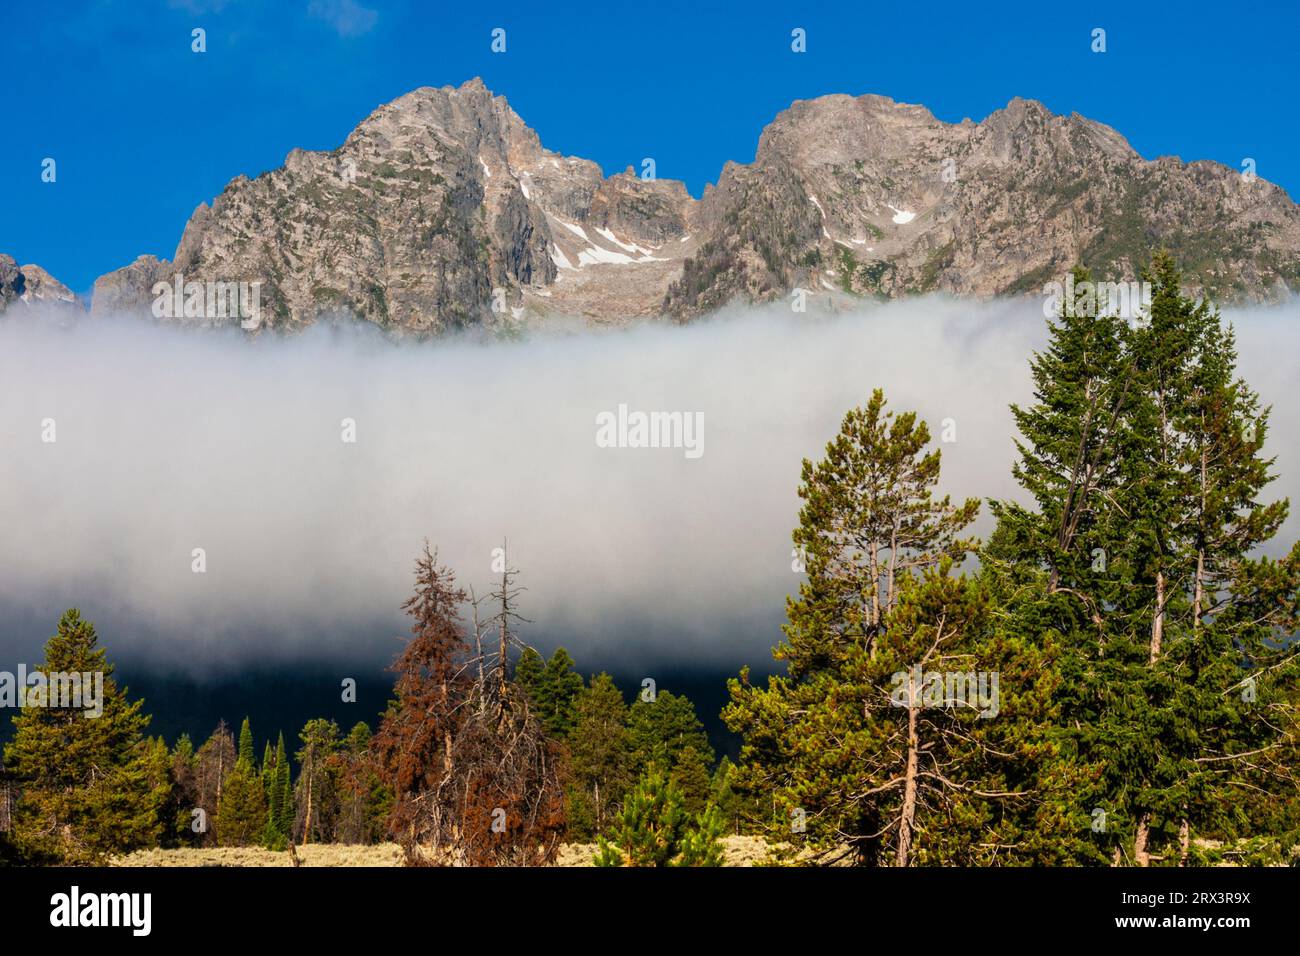 Tief liegende Wolken und Nebel verwüsten die Grand Tetons im frühen Morgenlicht. Dieser Berg ist der jüngste der Rocky Mountain Ranges. Stockfoto